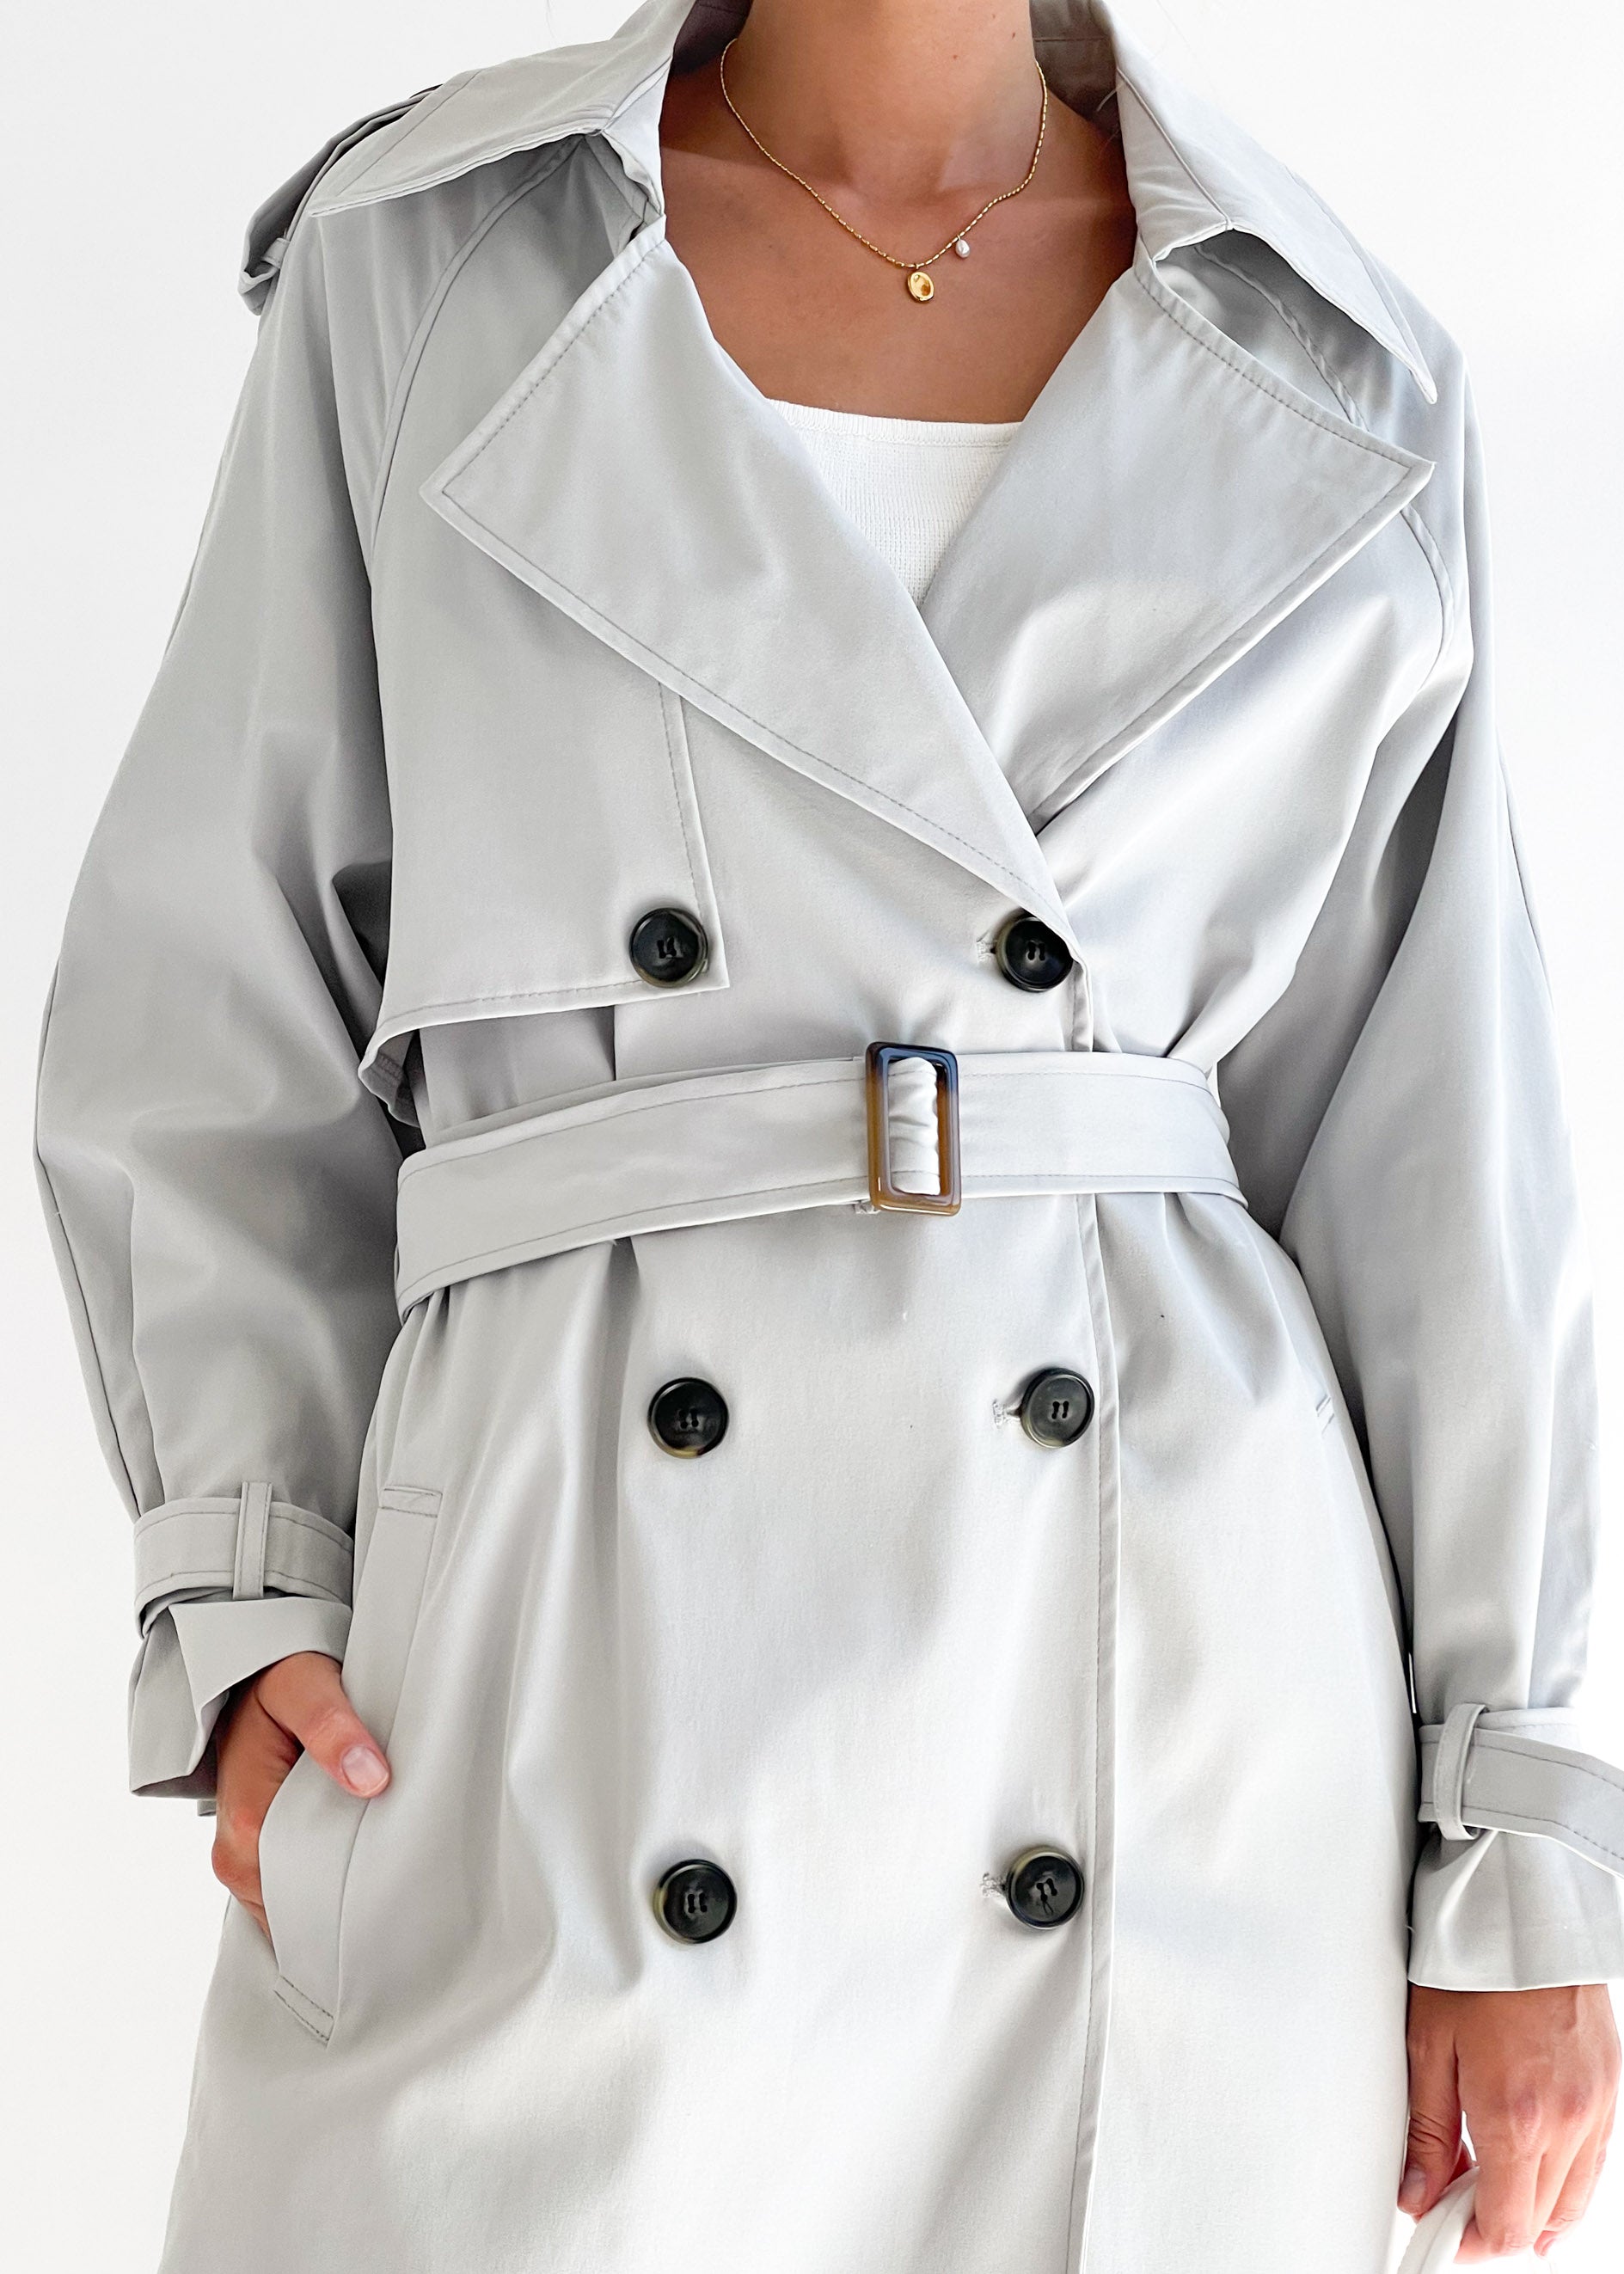 Taffie Trench Coat - Grey